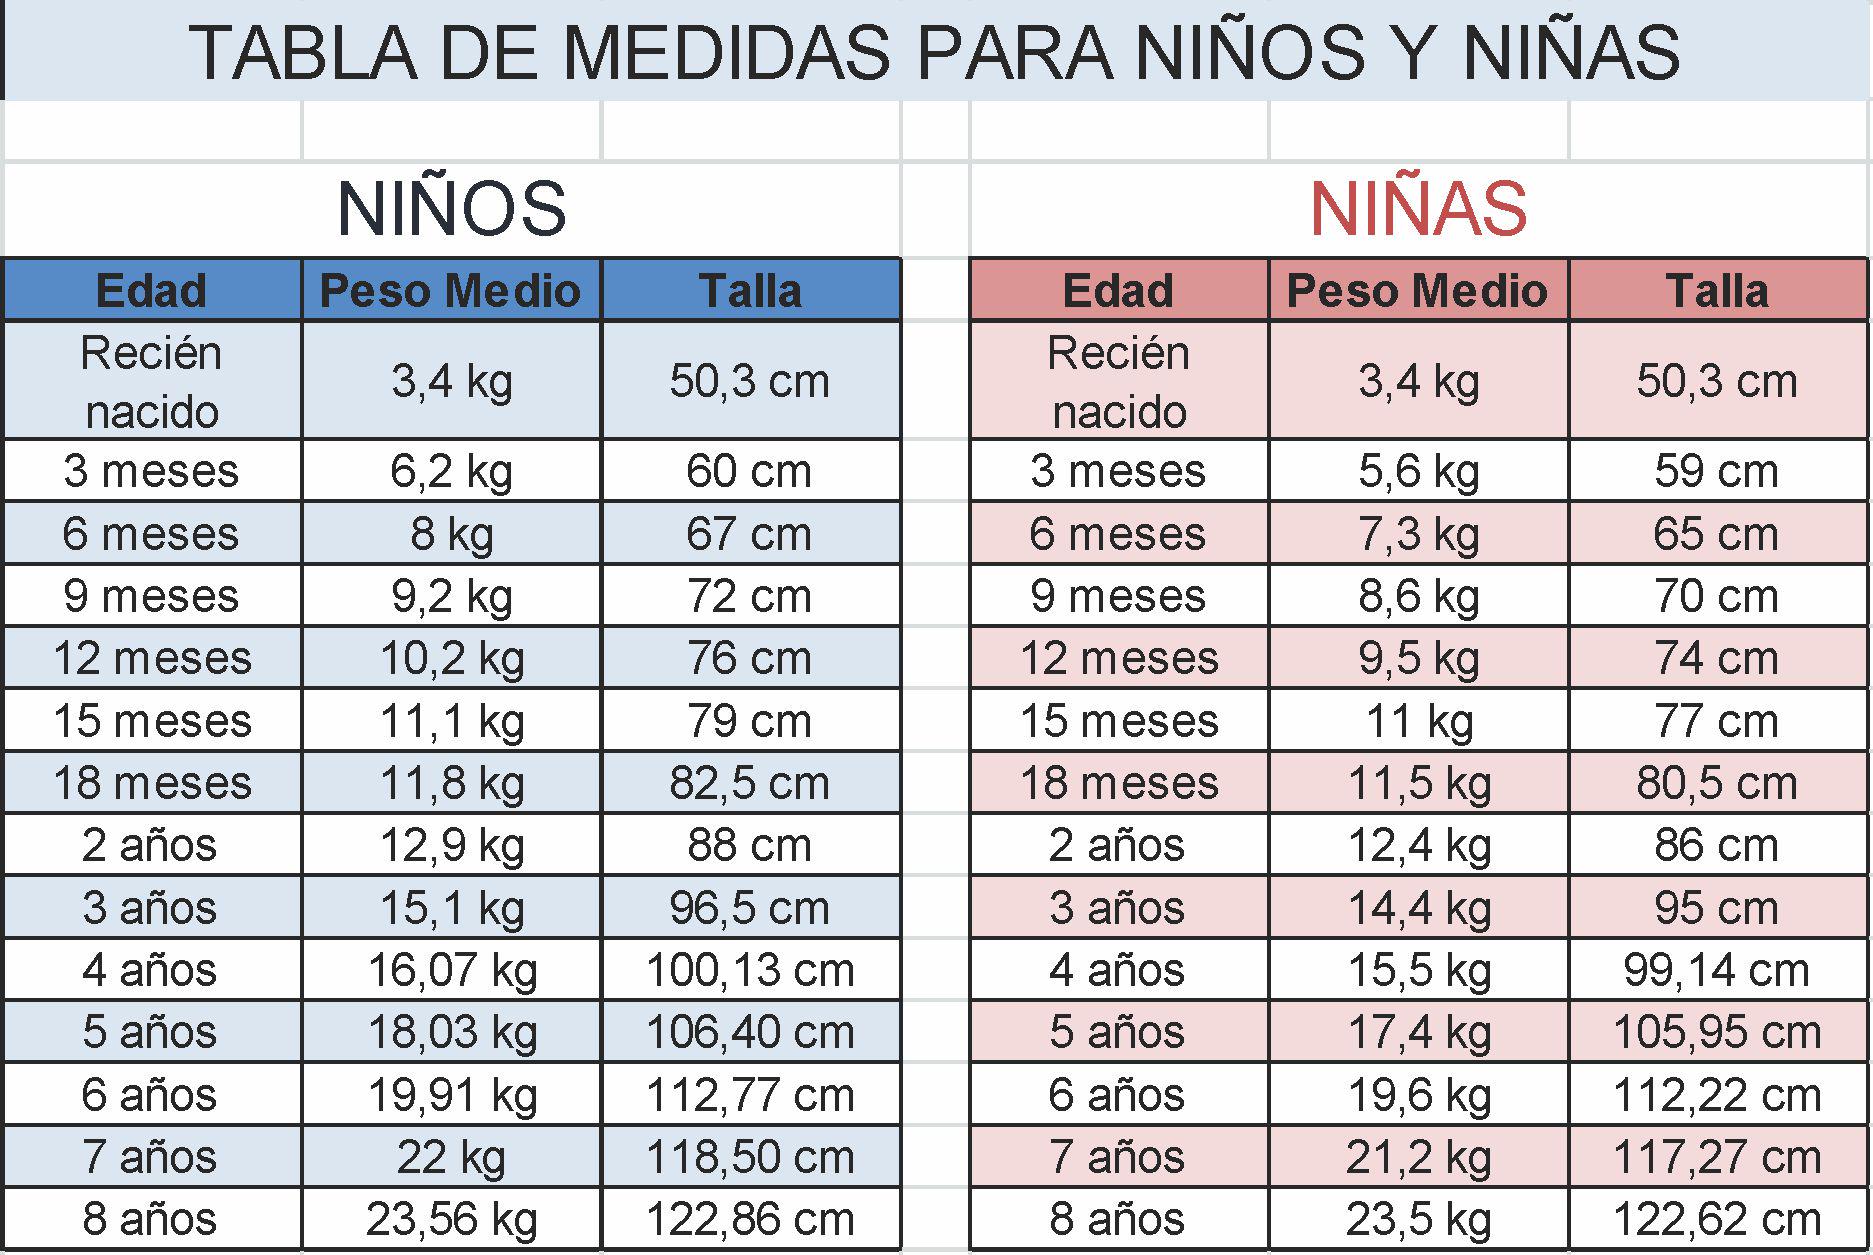 Revista MundoToddler："Tabla de peso y talla para niños y niñas A continuación te dejo una imagen. http://t.co/O2qJ1J9BfU" / Twitter